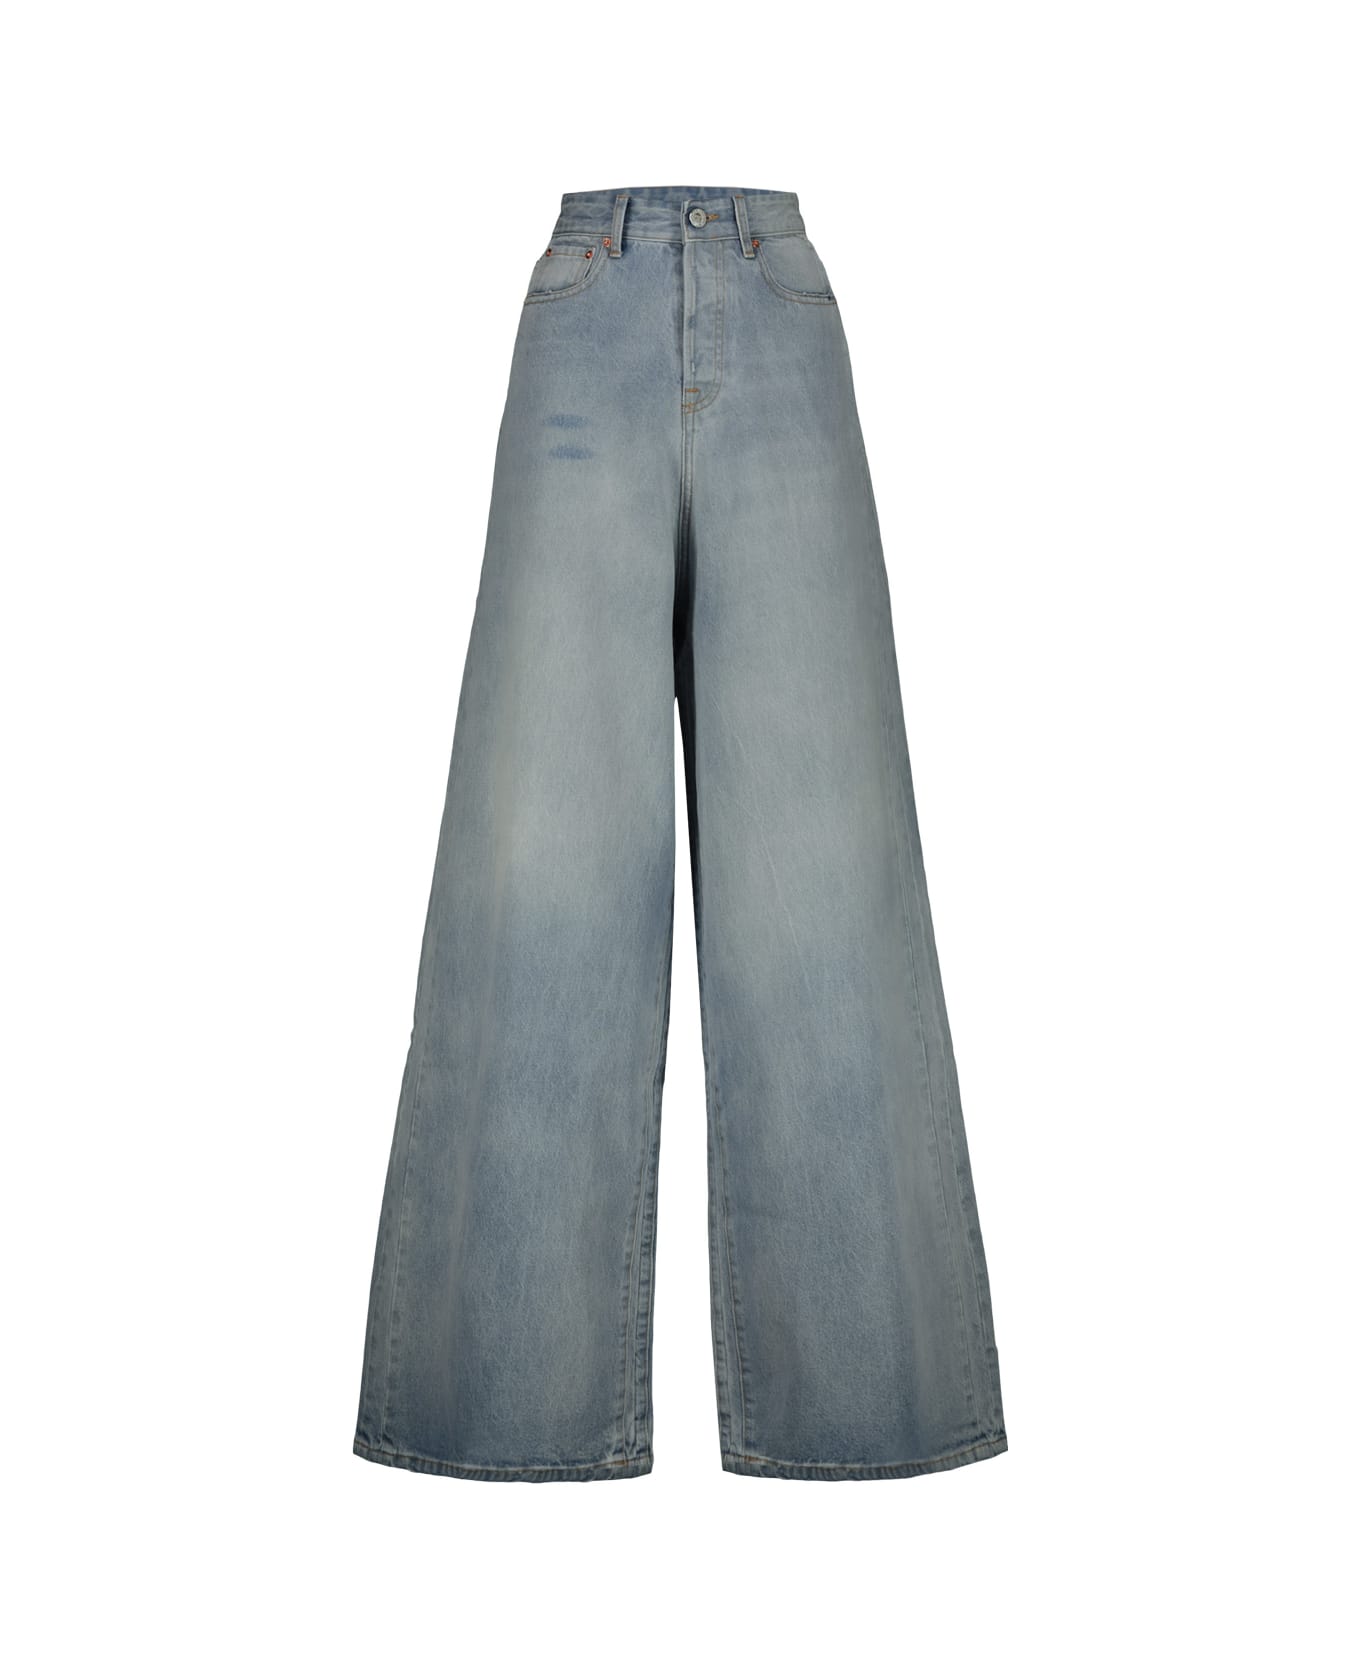 VETEMENTS Big Shape Jeans - Blue デニム